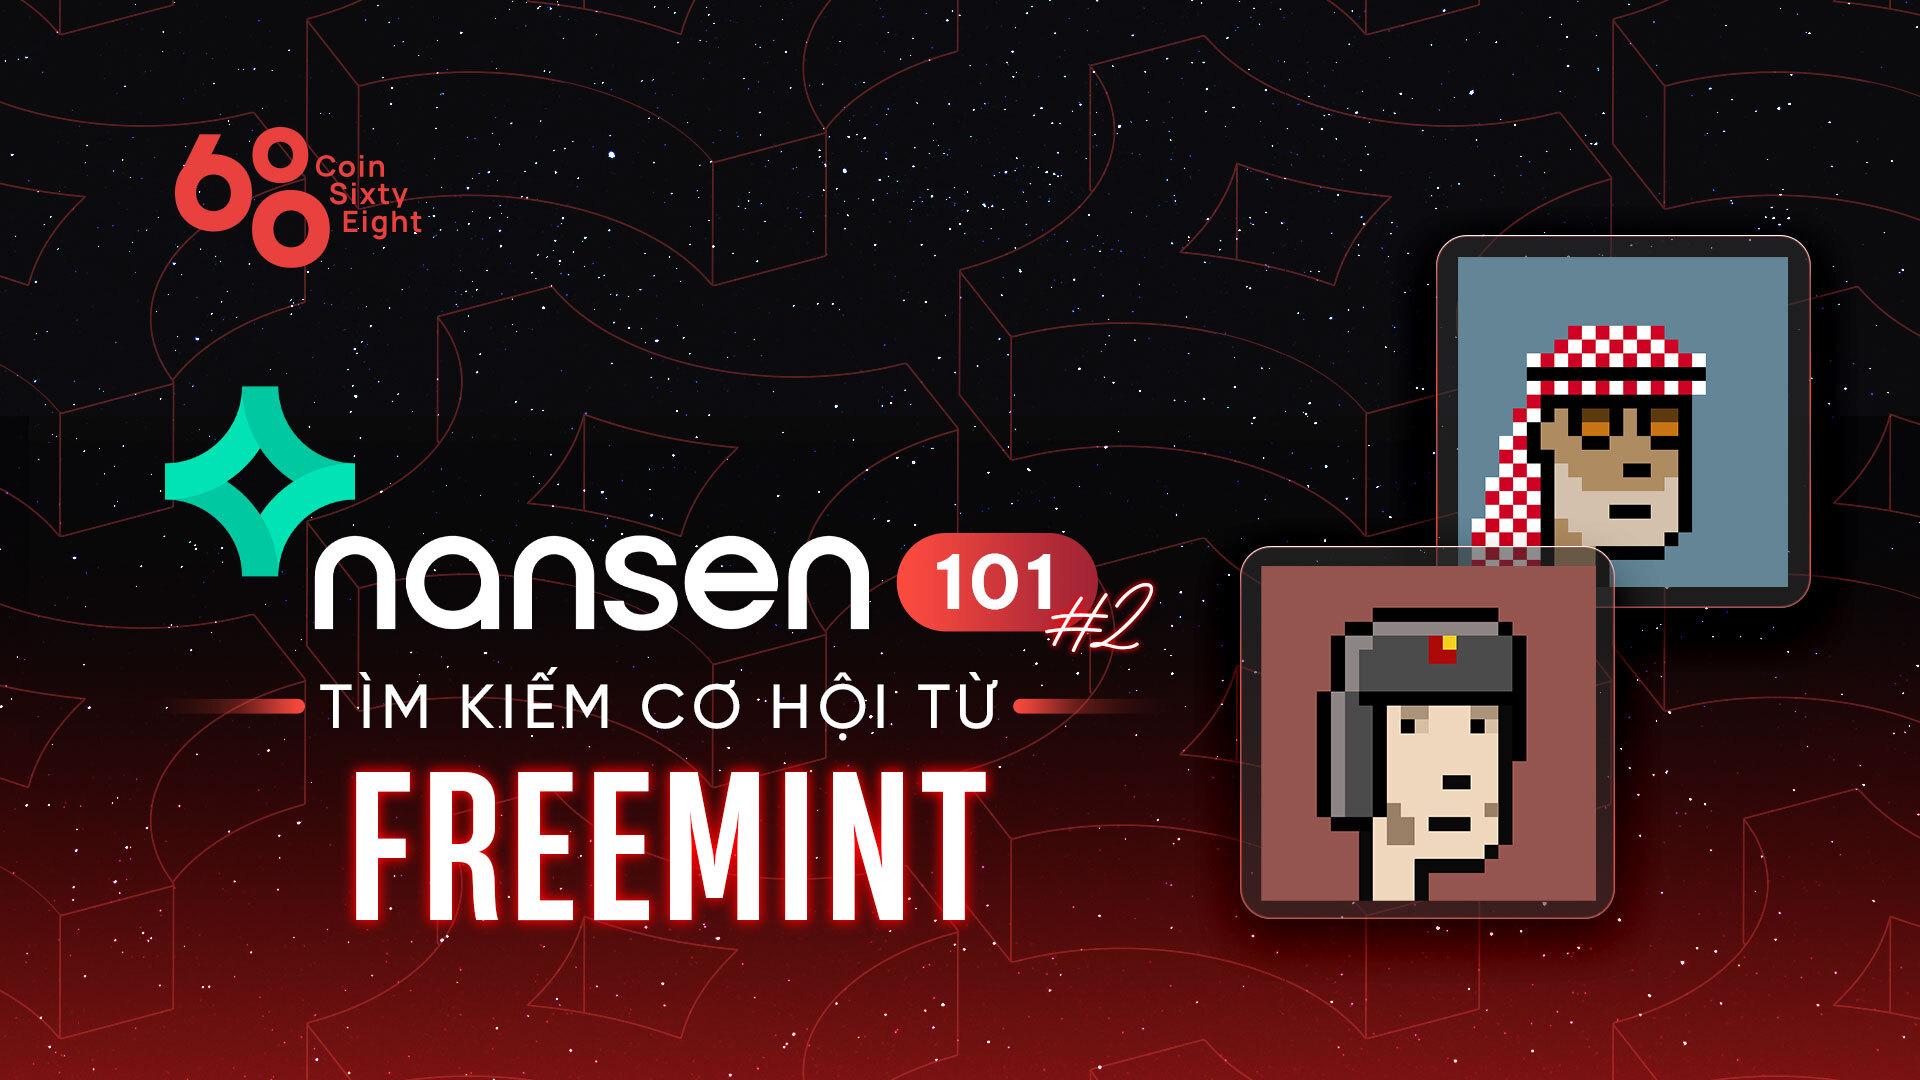 nansen-101-2-tim-kiem-co-hoi-tu-free-mint-nft